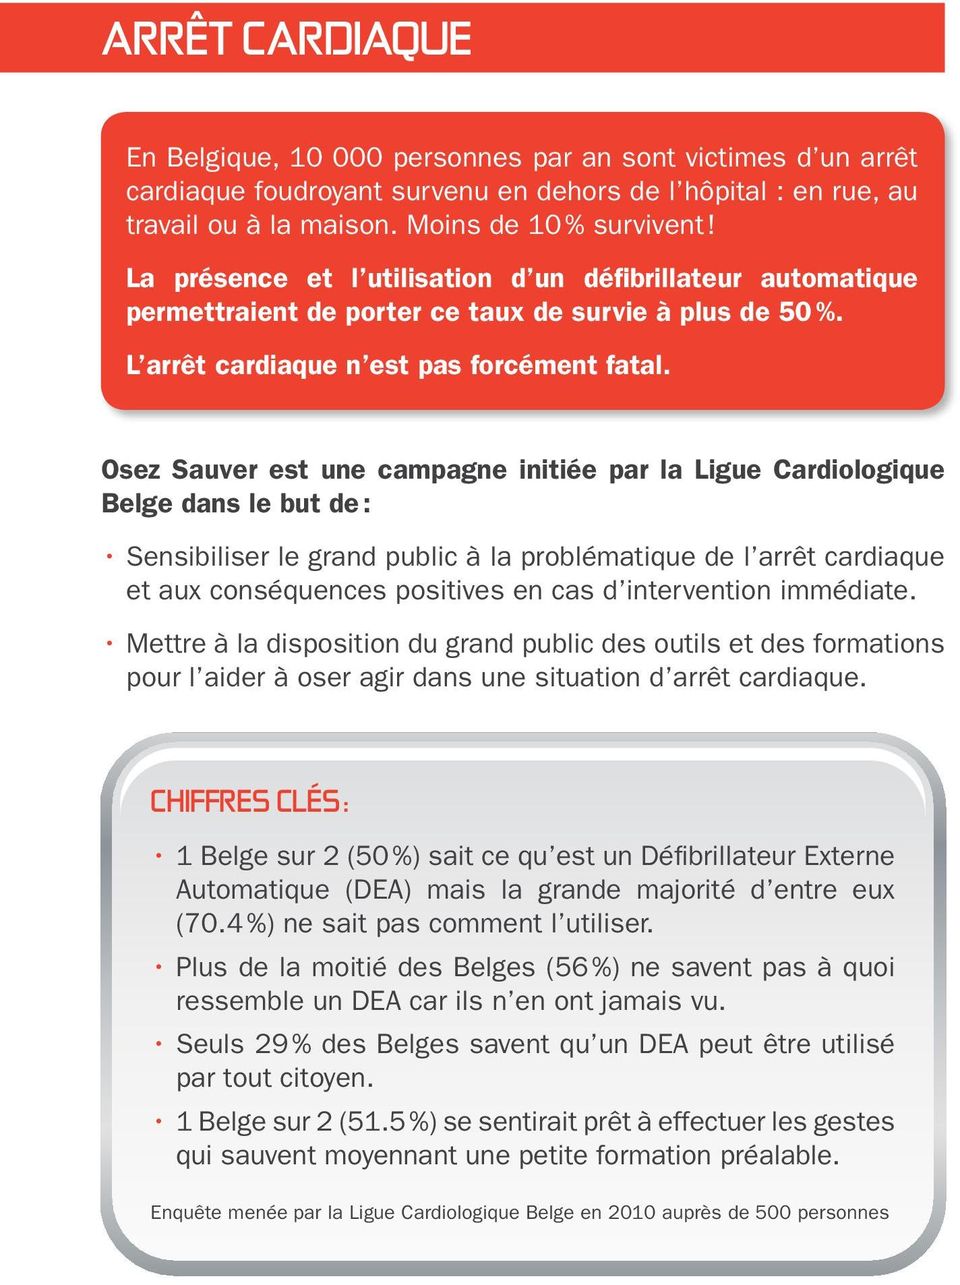 Osez Sauver est une campagne initiée par la Ligue Cardiologique Belge dans le but de : Sensibiliser le grand public à la problématique de l arrêt cardiaque et aux conséquences positives en cas d